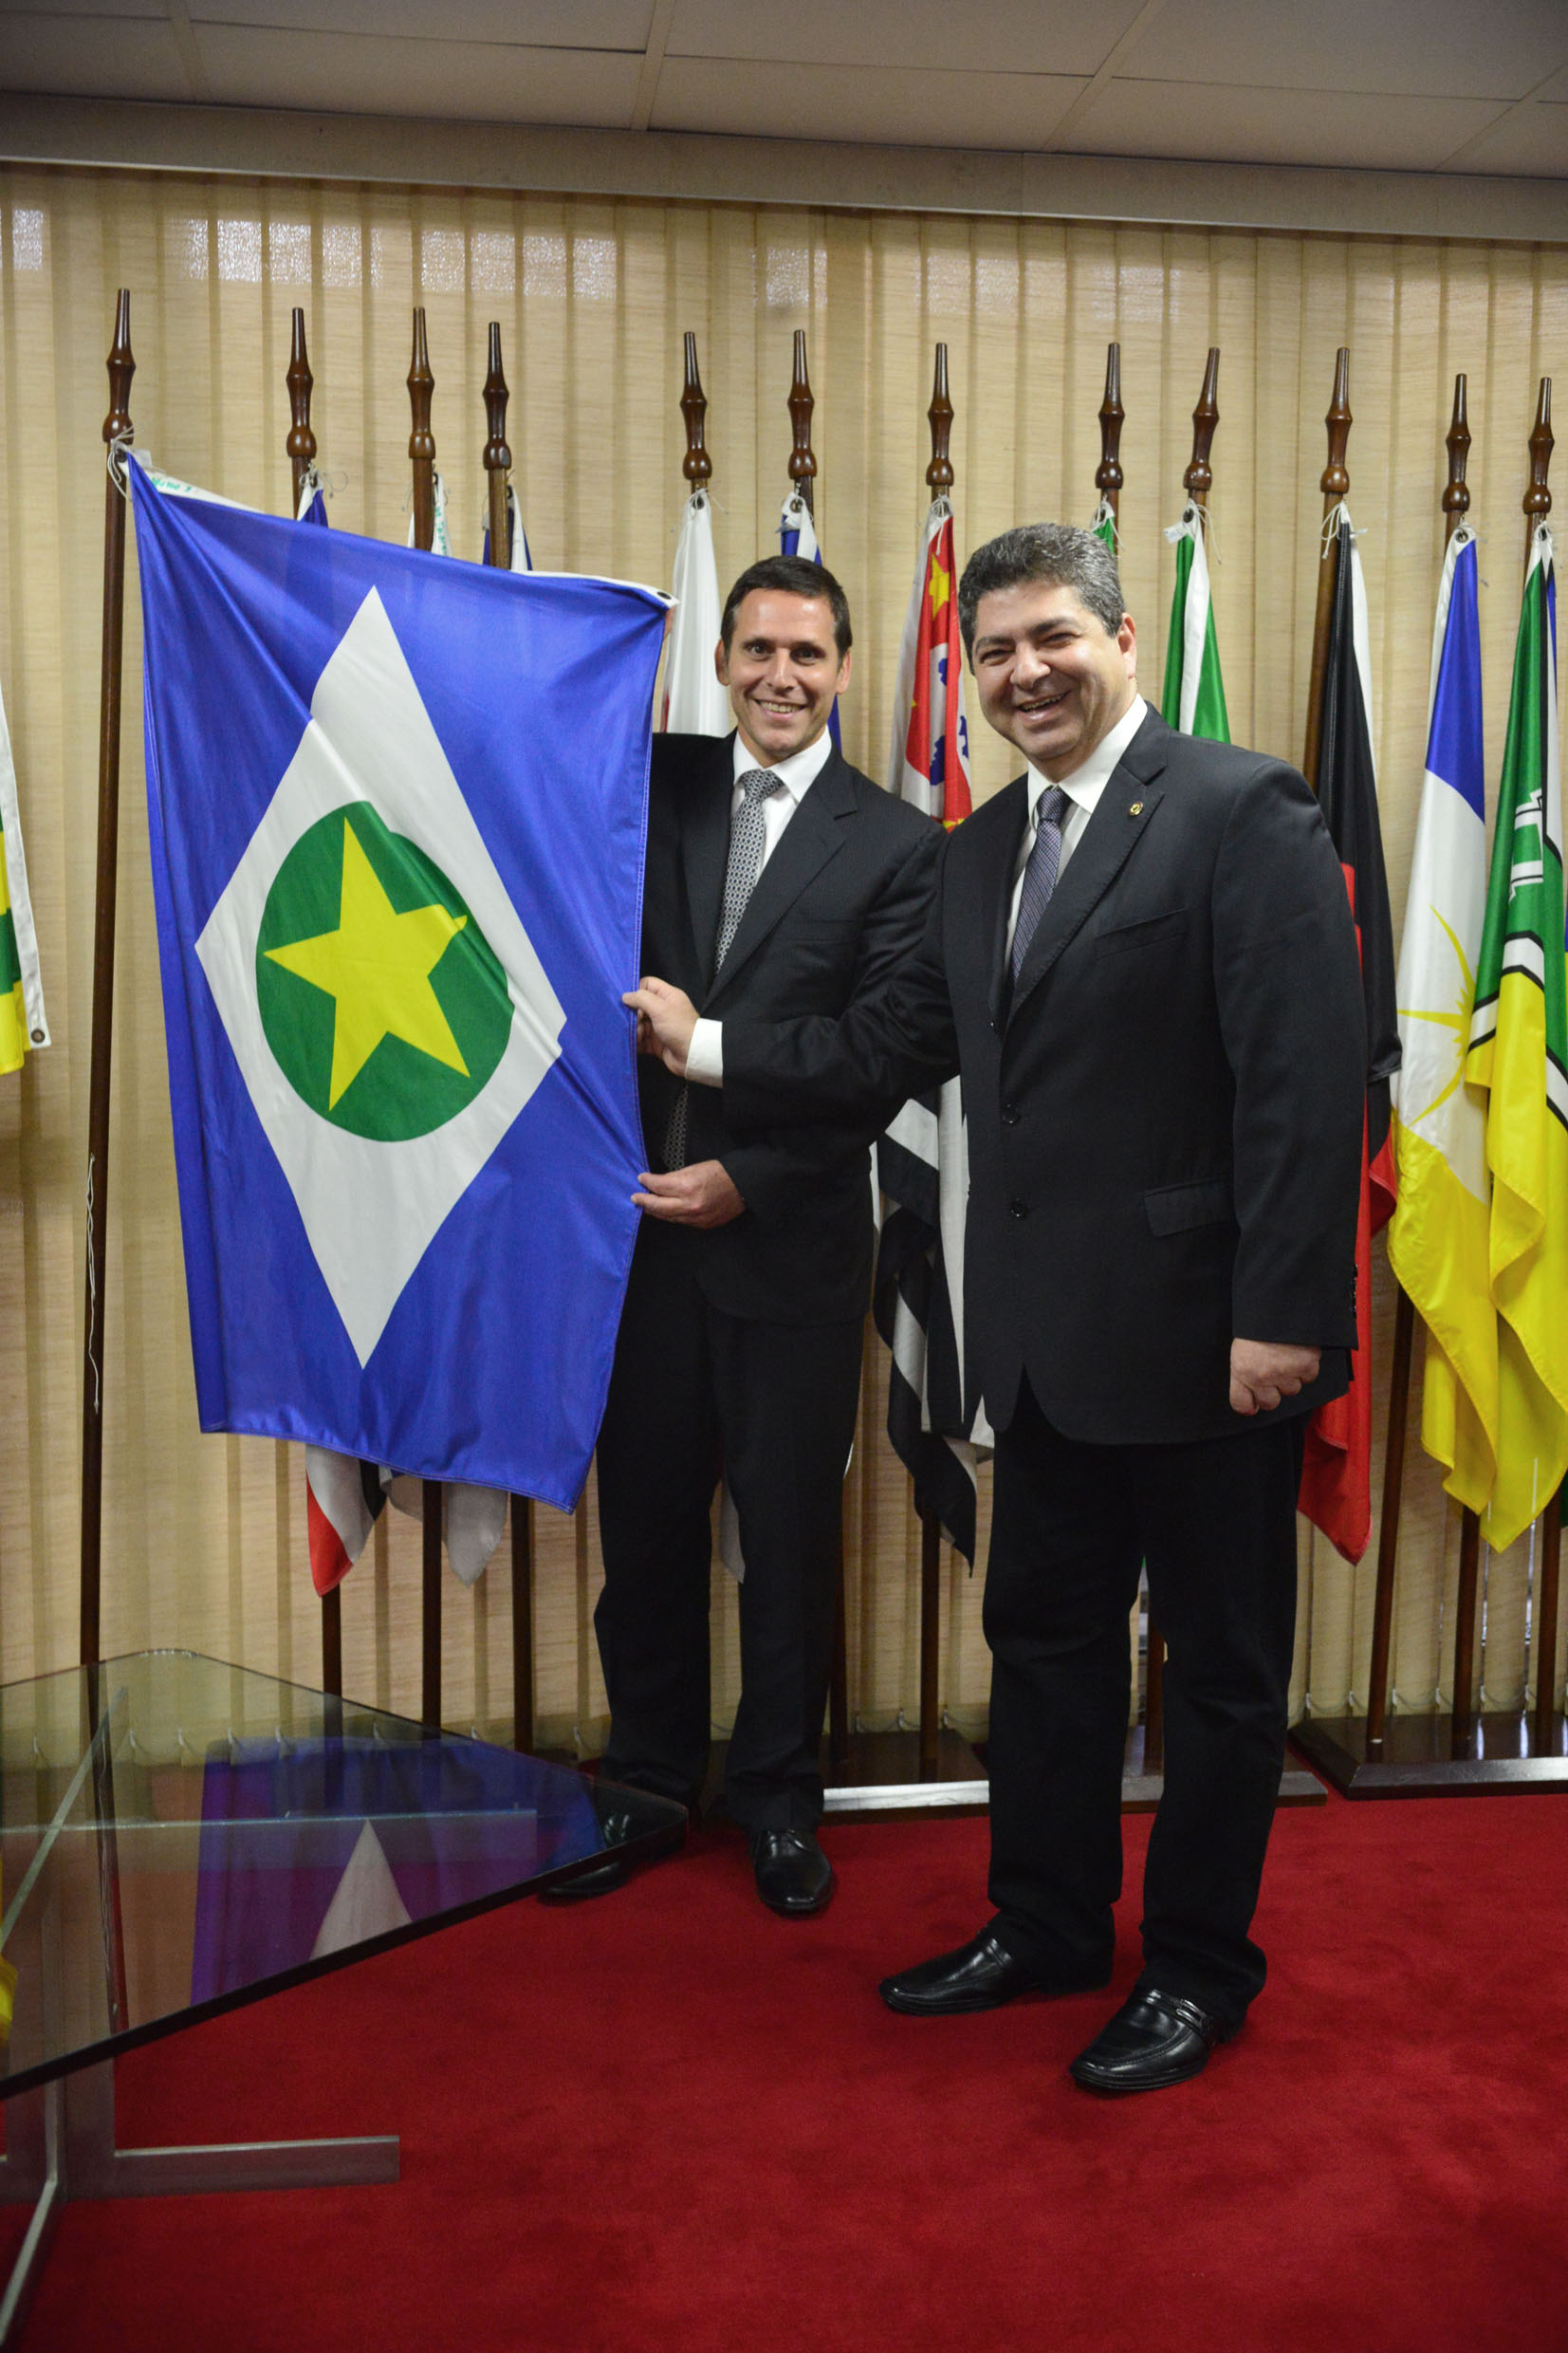 Fernando Capez segura a bandeira do Estado do Mato Grosso, junto ao presidente da Assembleia Legislativa daquele Estado, Guilherme Maluf<a style='float:right;color:#ccc' href='https://www3.al.sp.gov.br/repositorio/noticia/N-03-2015/fg168603.jpg' target=_blank><i class='bi bi-zoom-in'></i> Clique para ver a imagem </a>